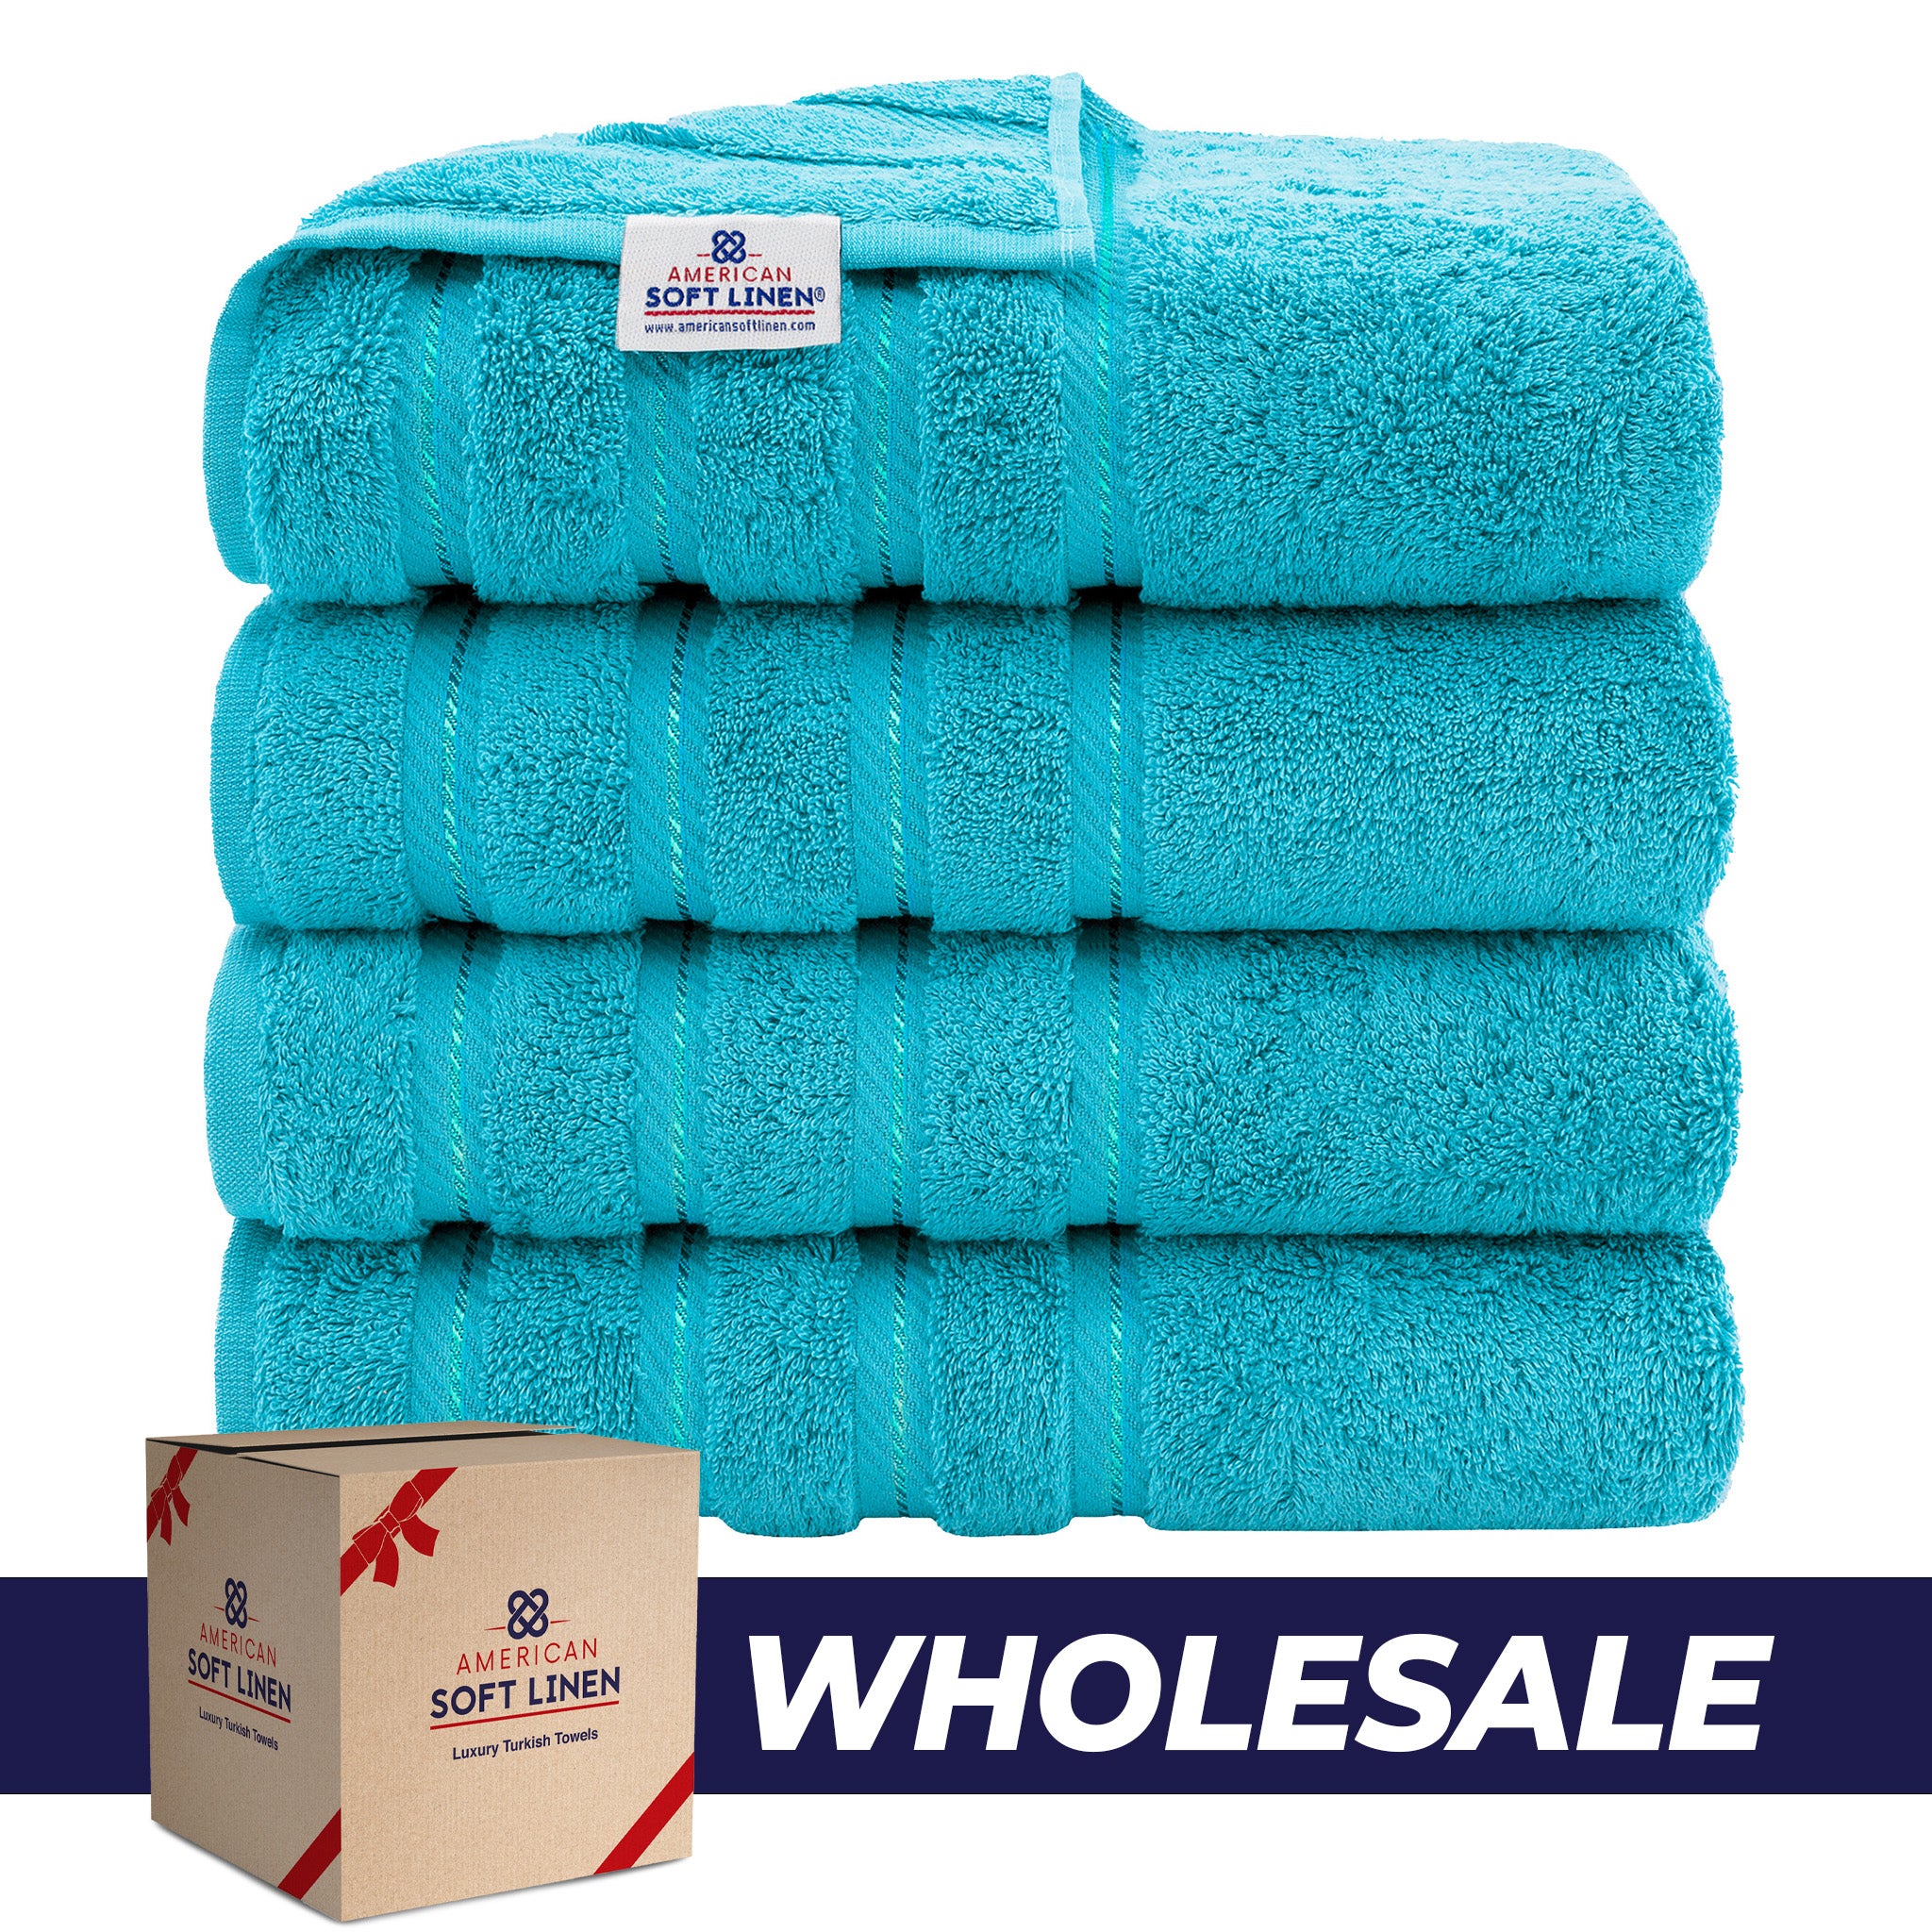 American Soft Linen 100% Turkish Cotton 4 Pack Bath Towel Set Wholesale aqua-0